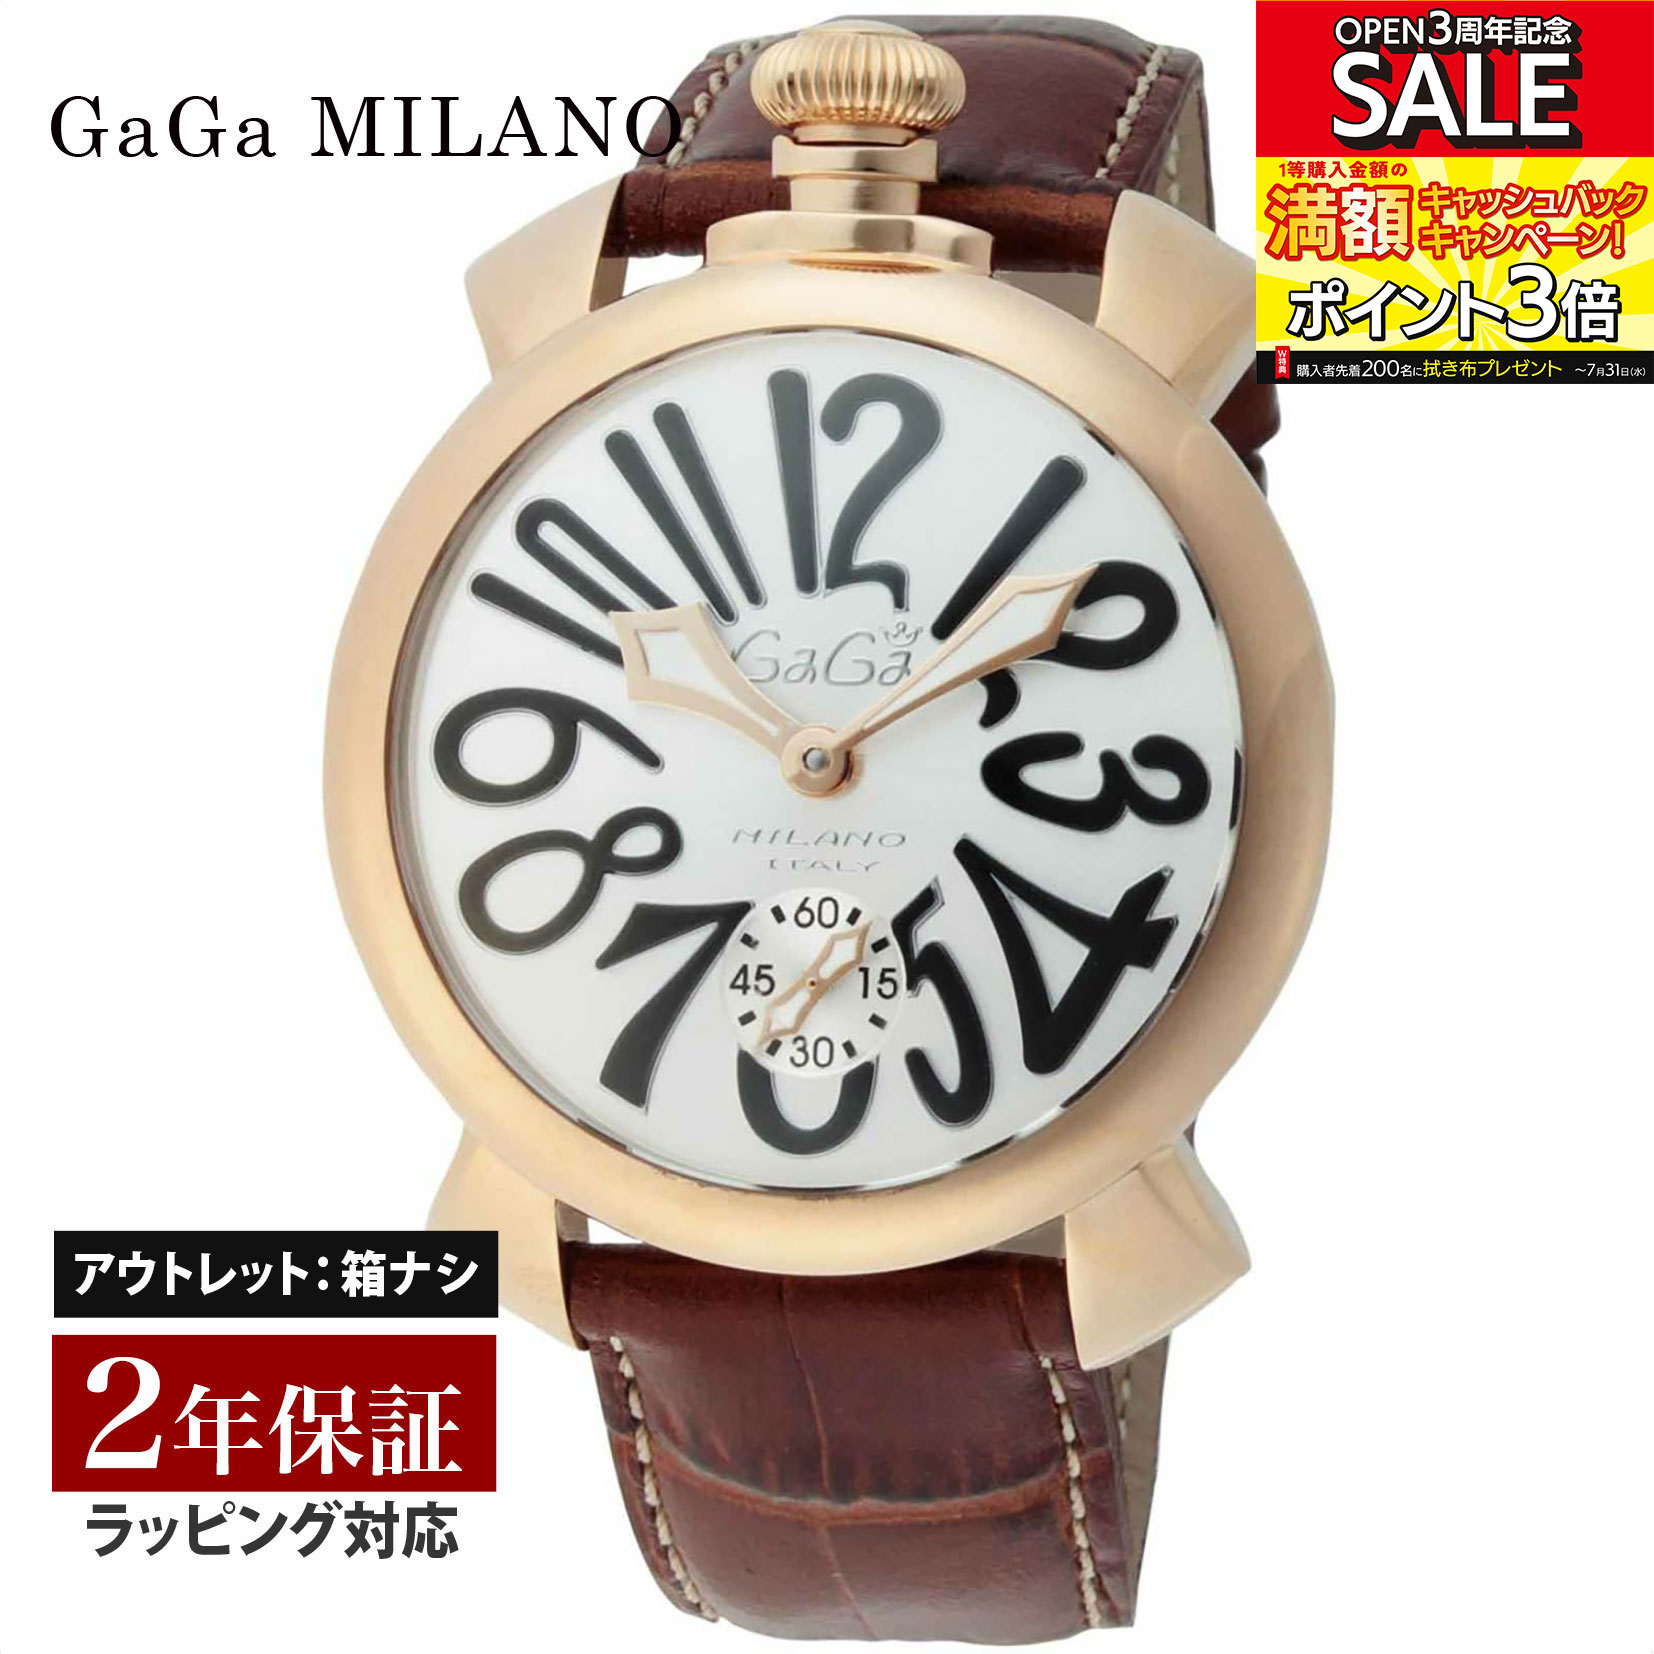 【クリアランスSALE】 GaGaMILAN ガガミラノ MANUALE 48MM 手巻き メンズ シルバー 5011.06S-BRW 腕時計 高級腕時計 ブランド 